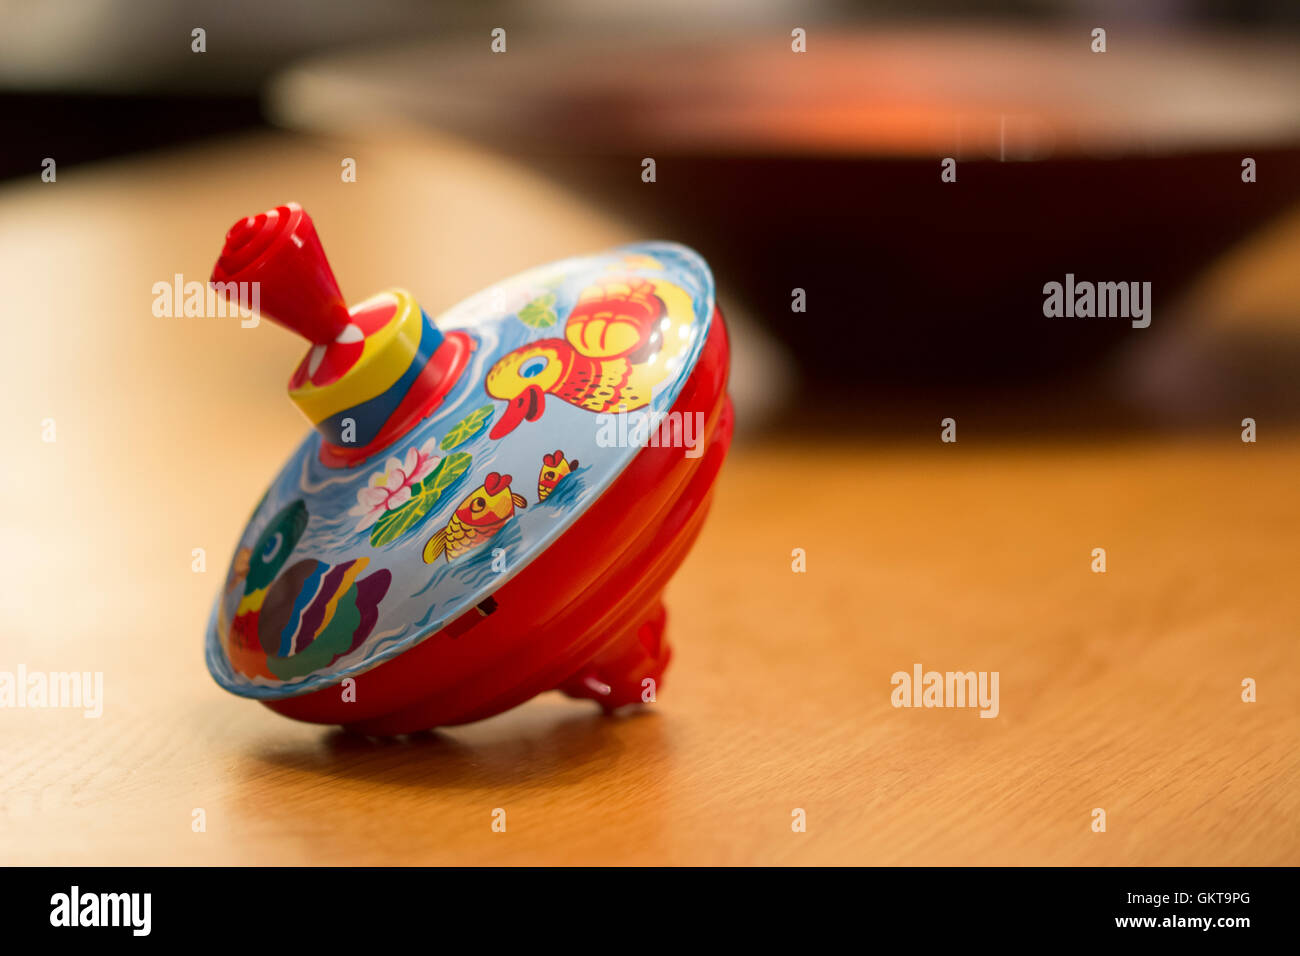 Einen schönen warmen Schuss ein einzelnes Kind Spielzeug-Kreisel mit einer Ente Grafik drauf Stockfoto